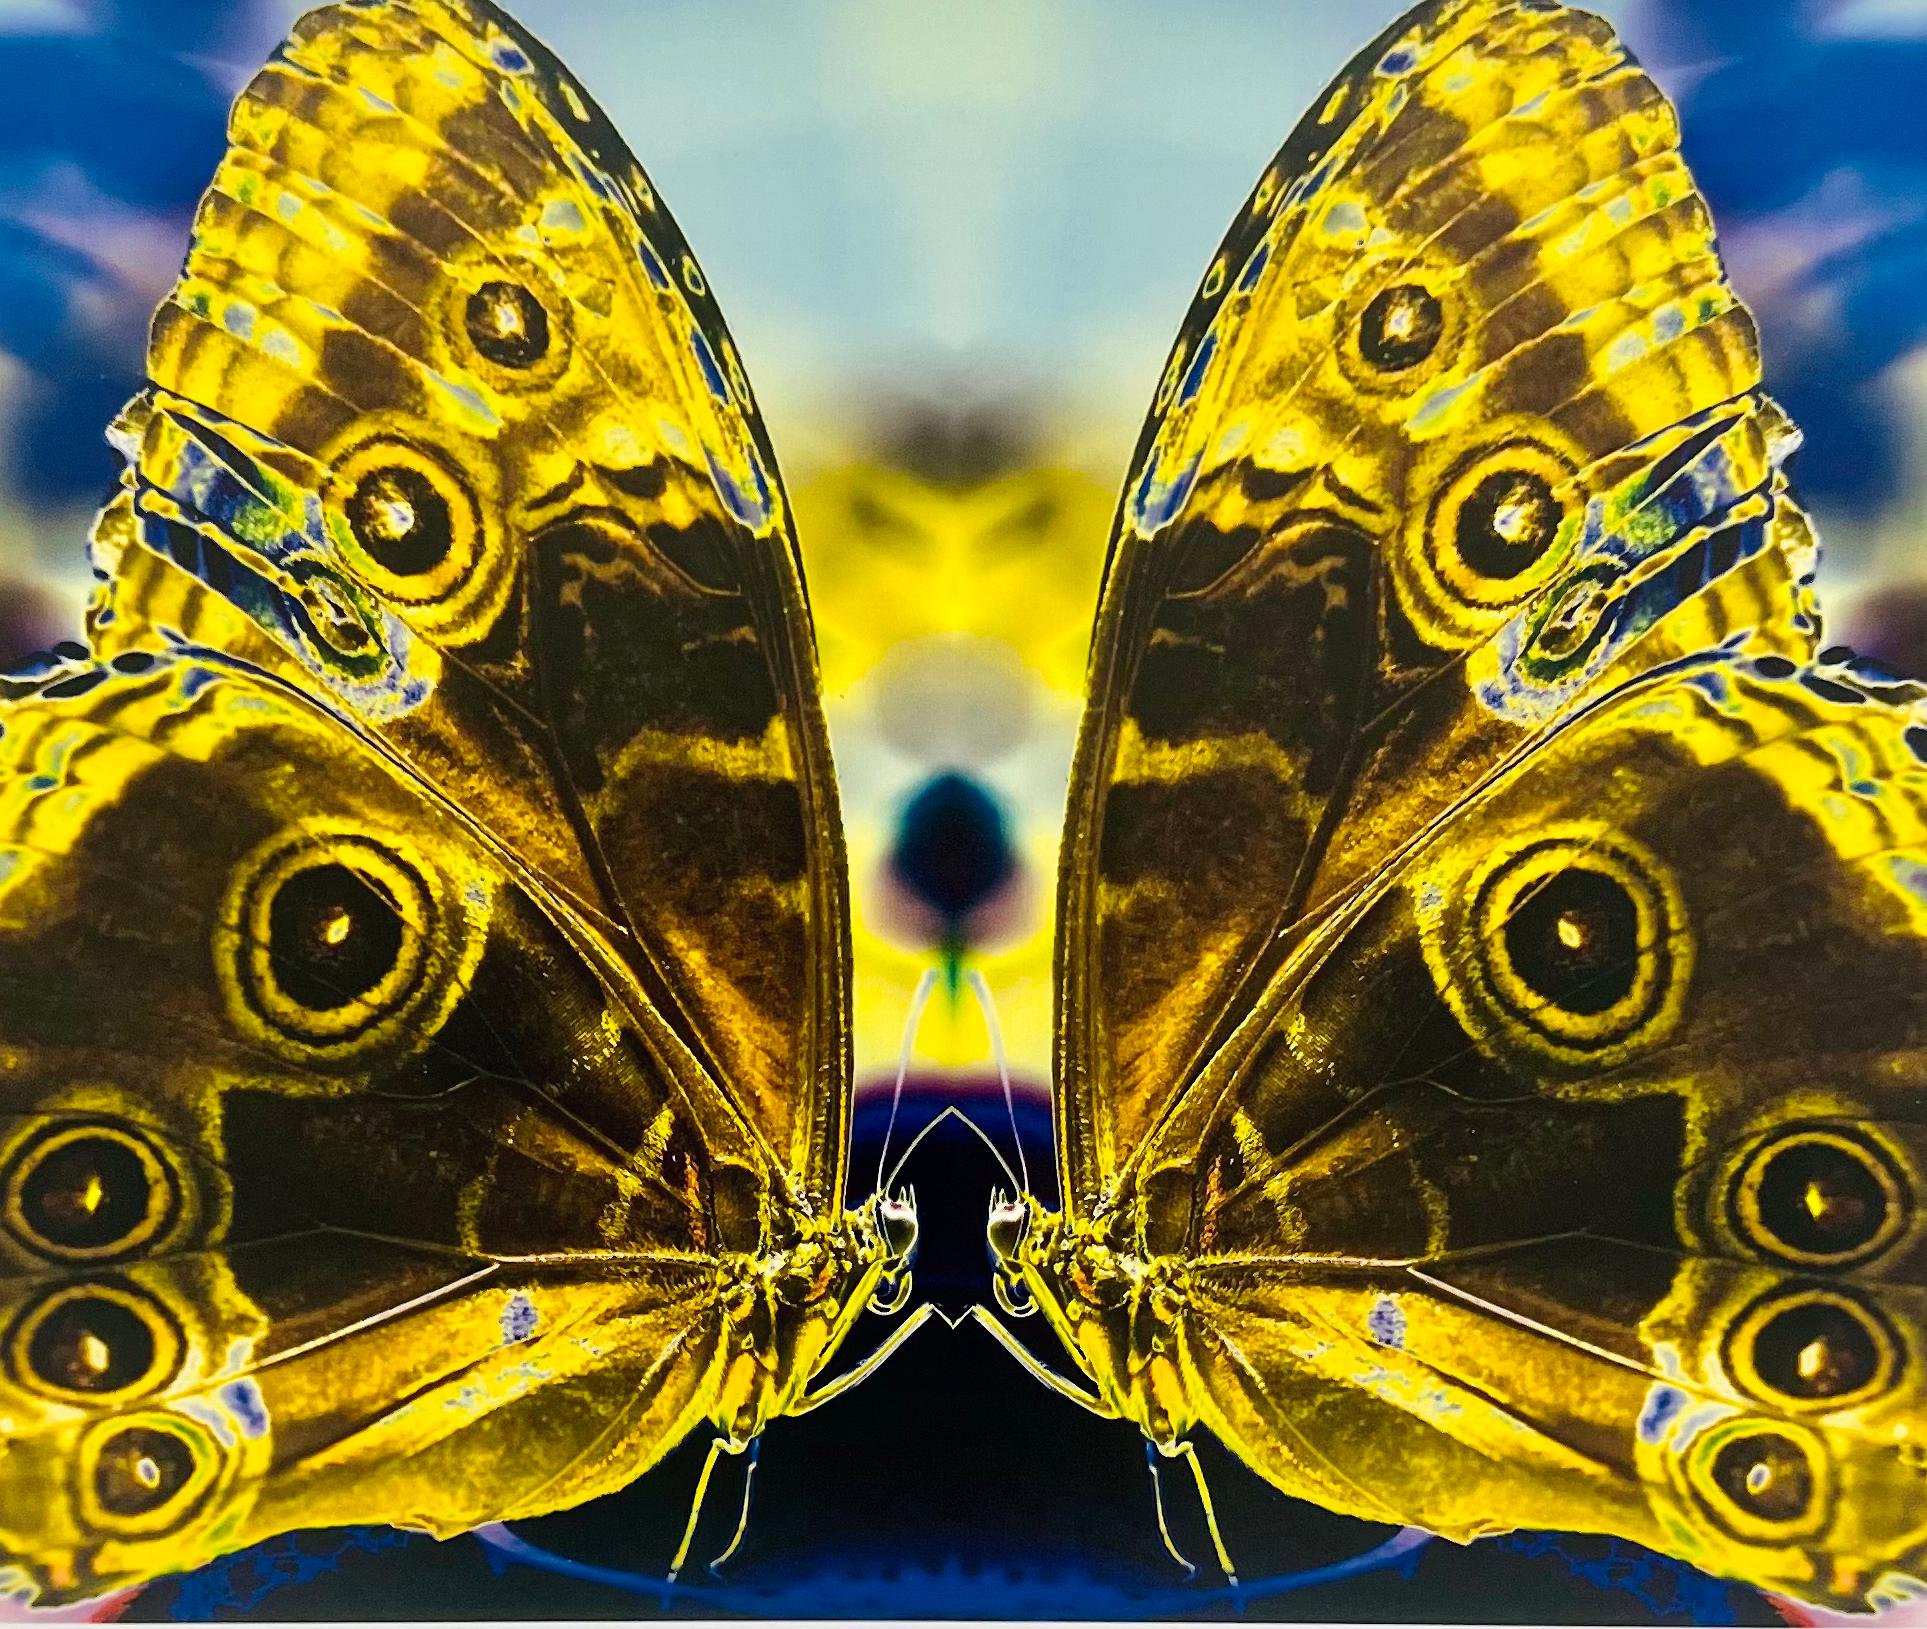 Union, Farbfotografie von Schmetterlingspaar in Schmetterlingsserie, Schmetterlingspaar (Zeitgenössisch), Photograph, von Roberta Fineberg